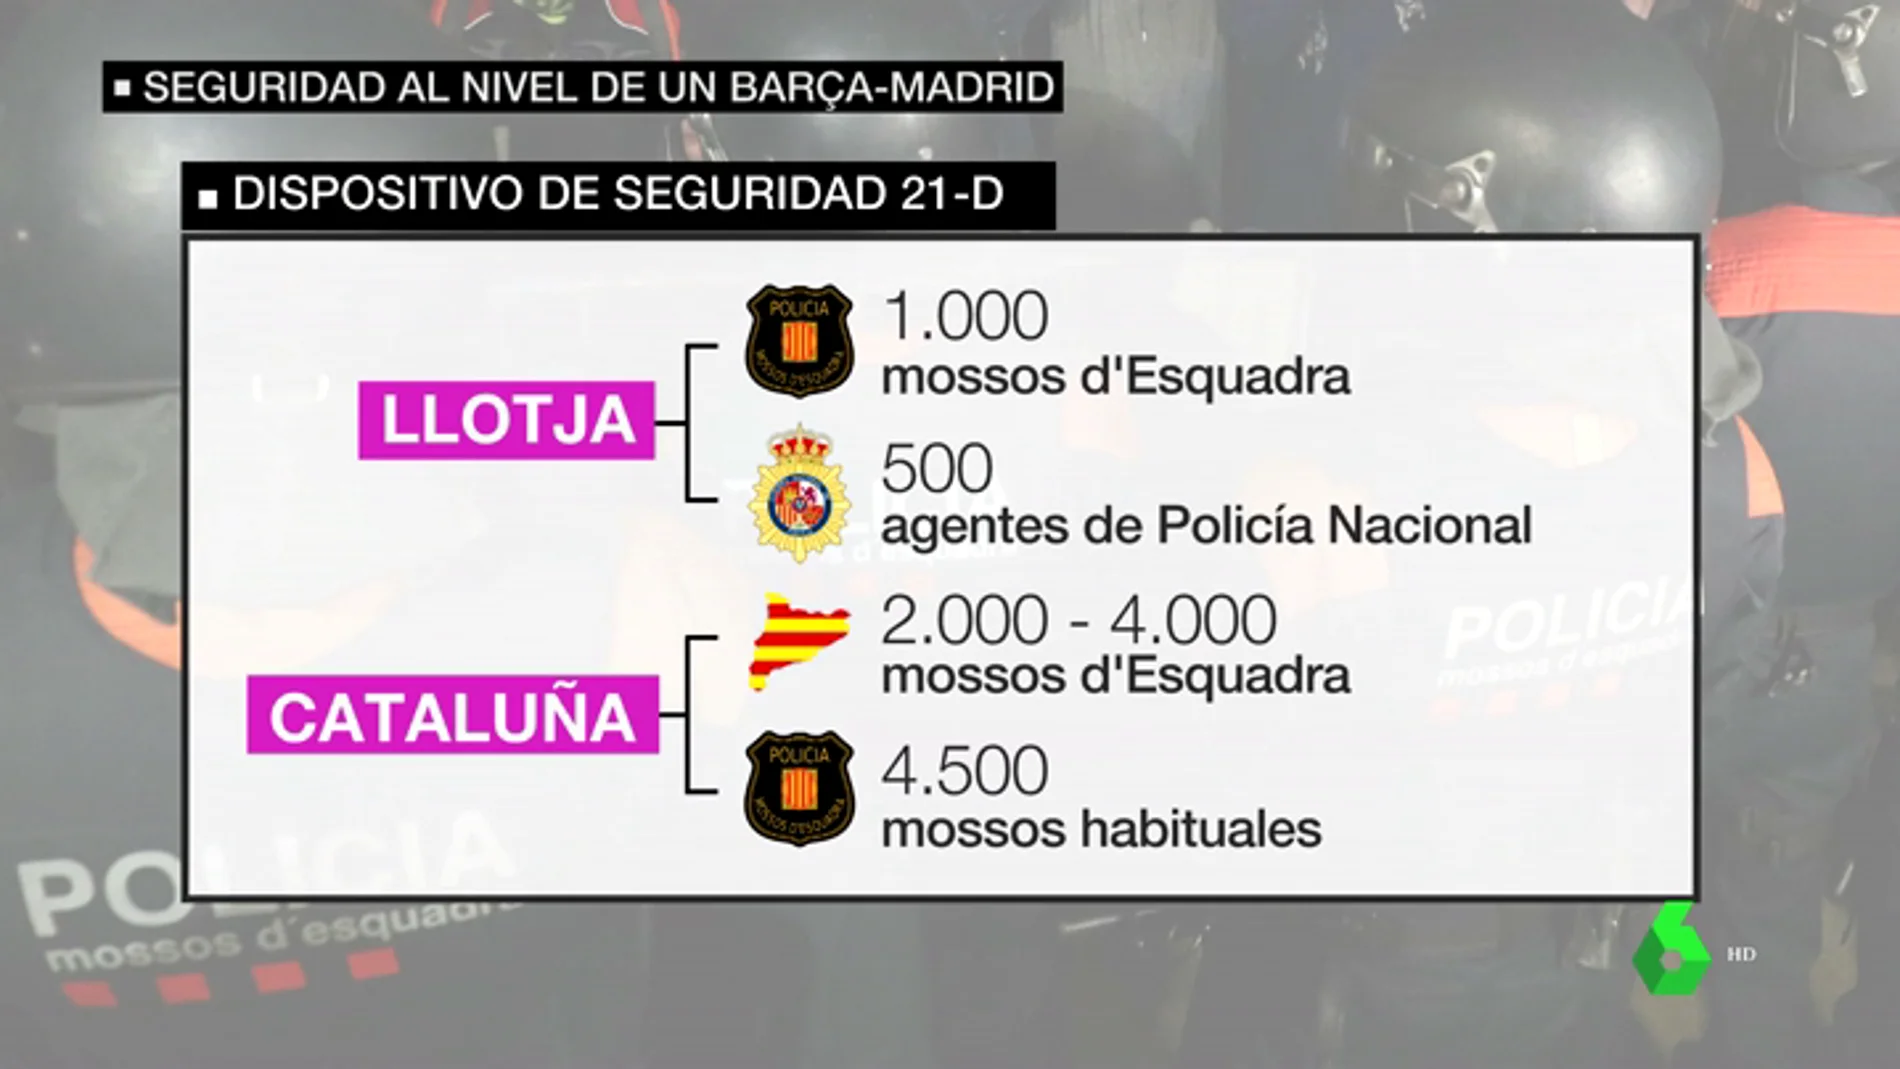 El Gobierno prepara un despliegue policial mayor al de un Barça-Madrid para el 21D: así se repartirán todos los agentes